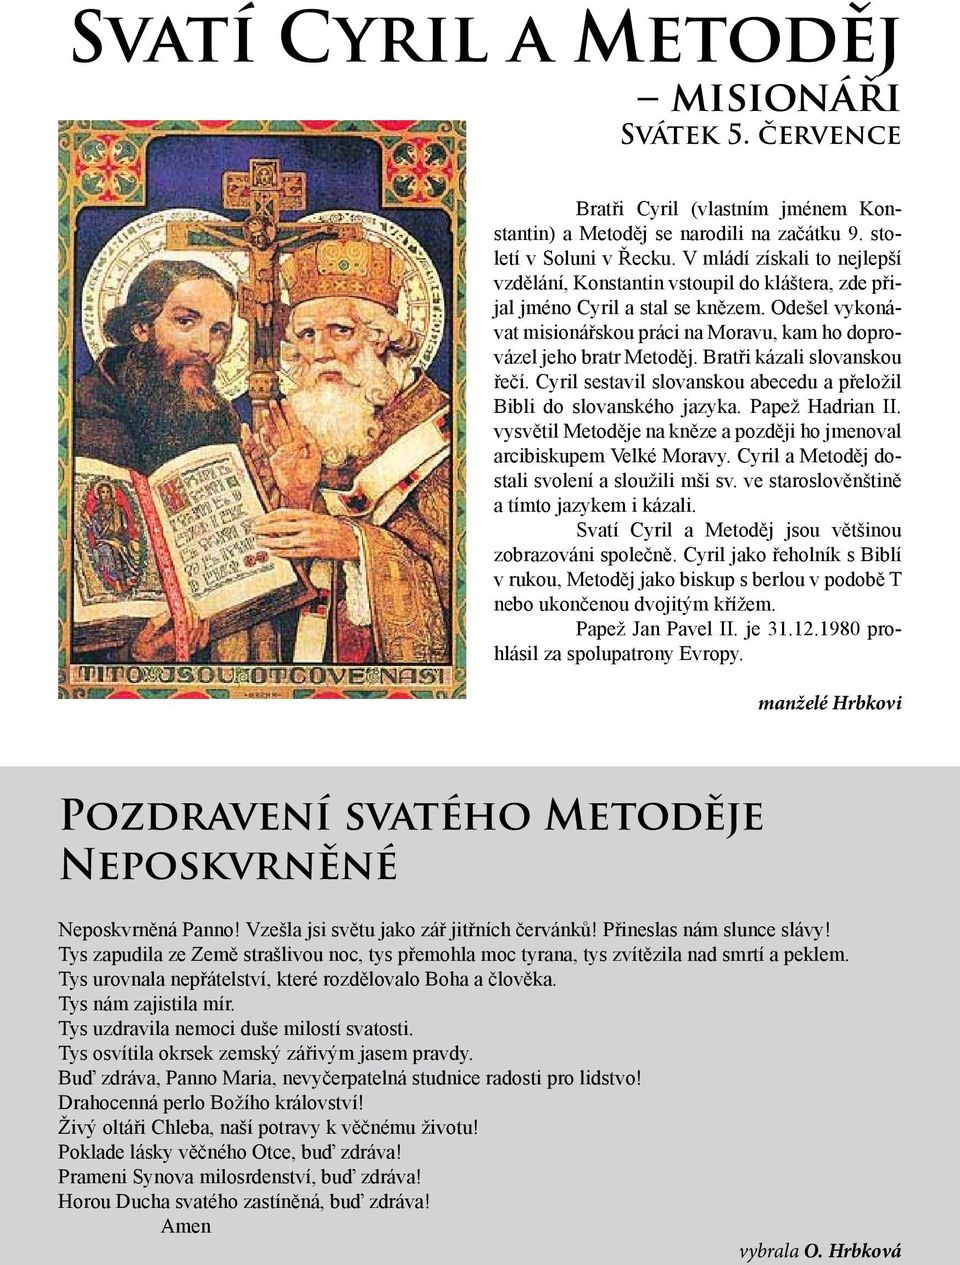 Bratři kázali slovanskou řečí. Cyril sestavil slovanskou abecedu a přeložil Bibli do slovanského jazyka. Papež Hadrian II. vysvětil Metoděje na kněze a později ho jmenoval arcibiskupem Velké Moravy.